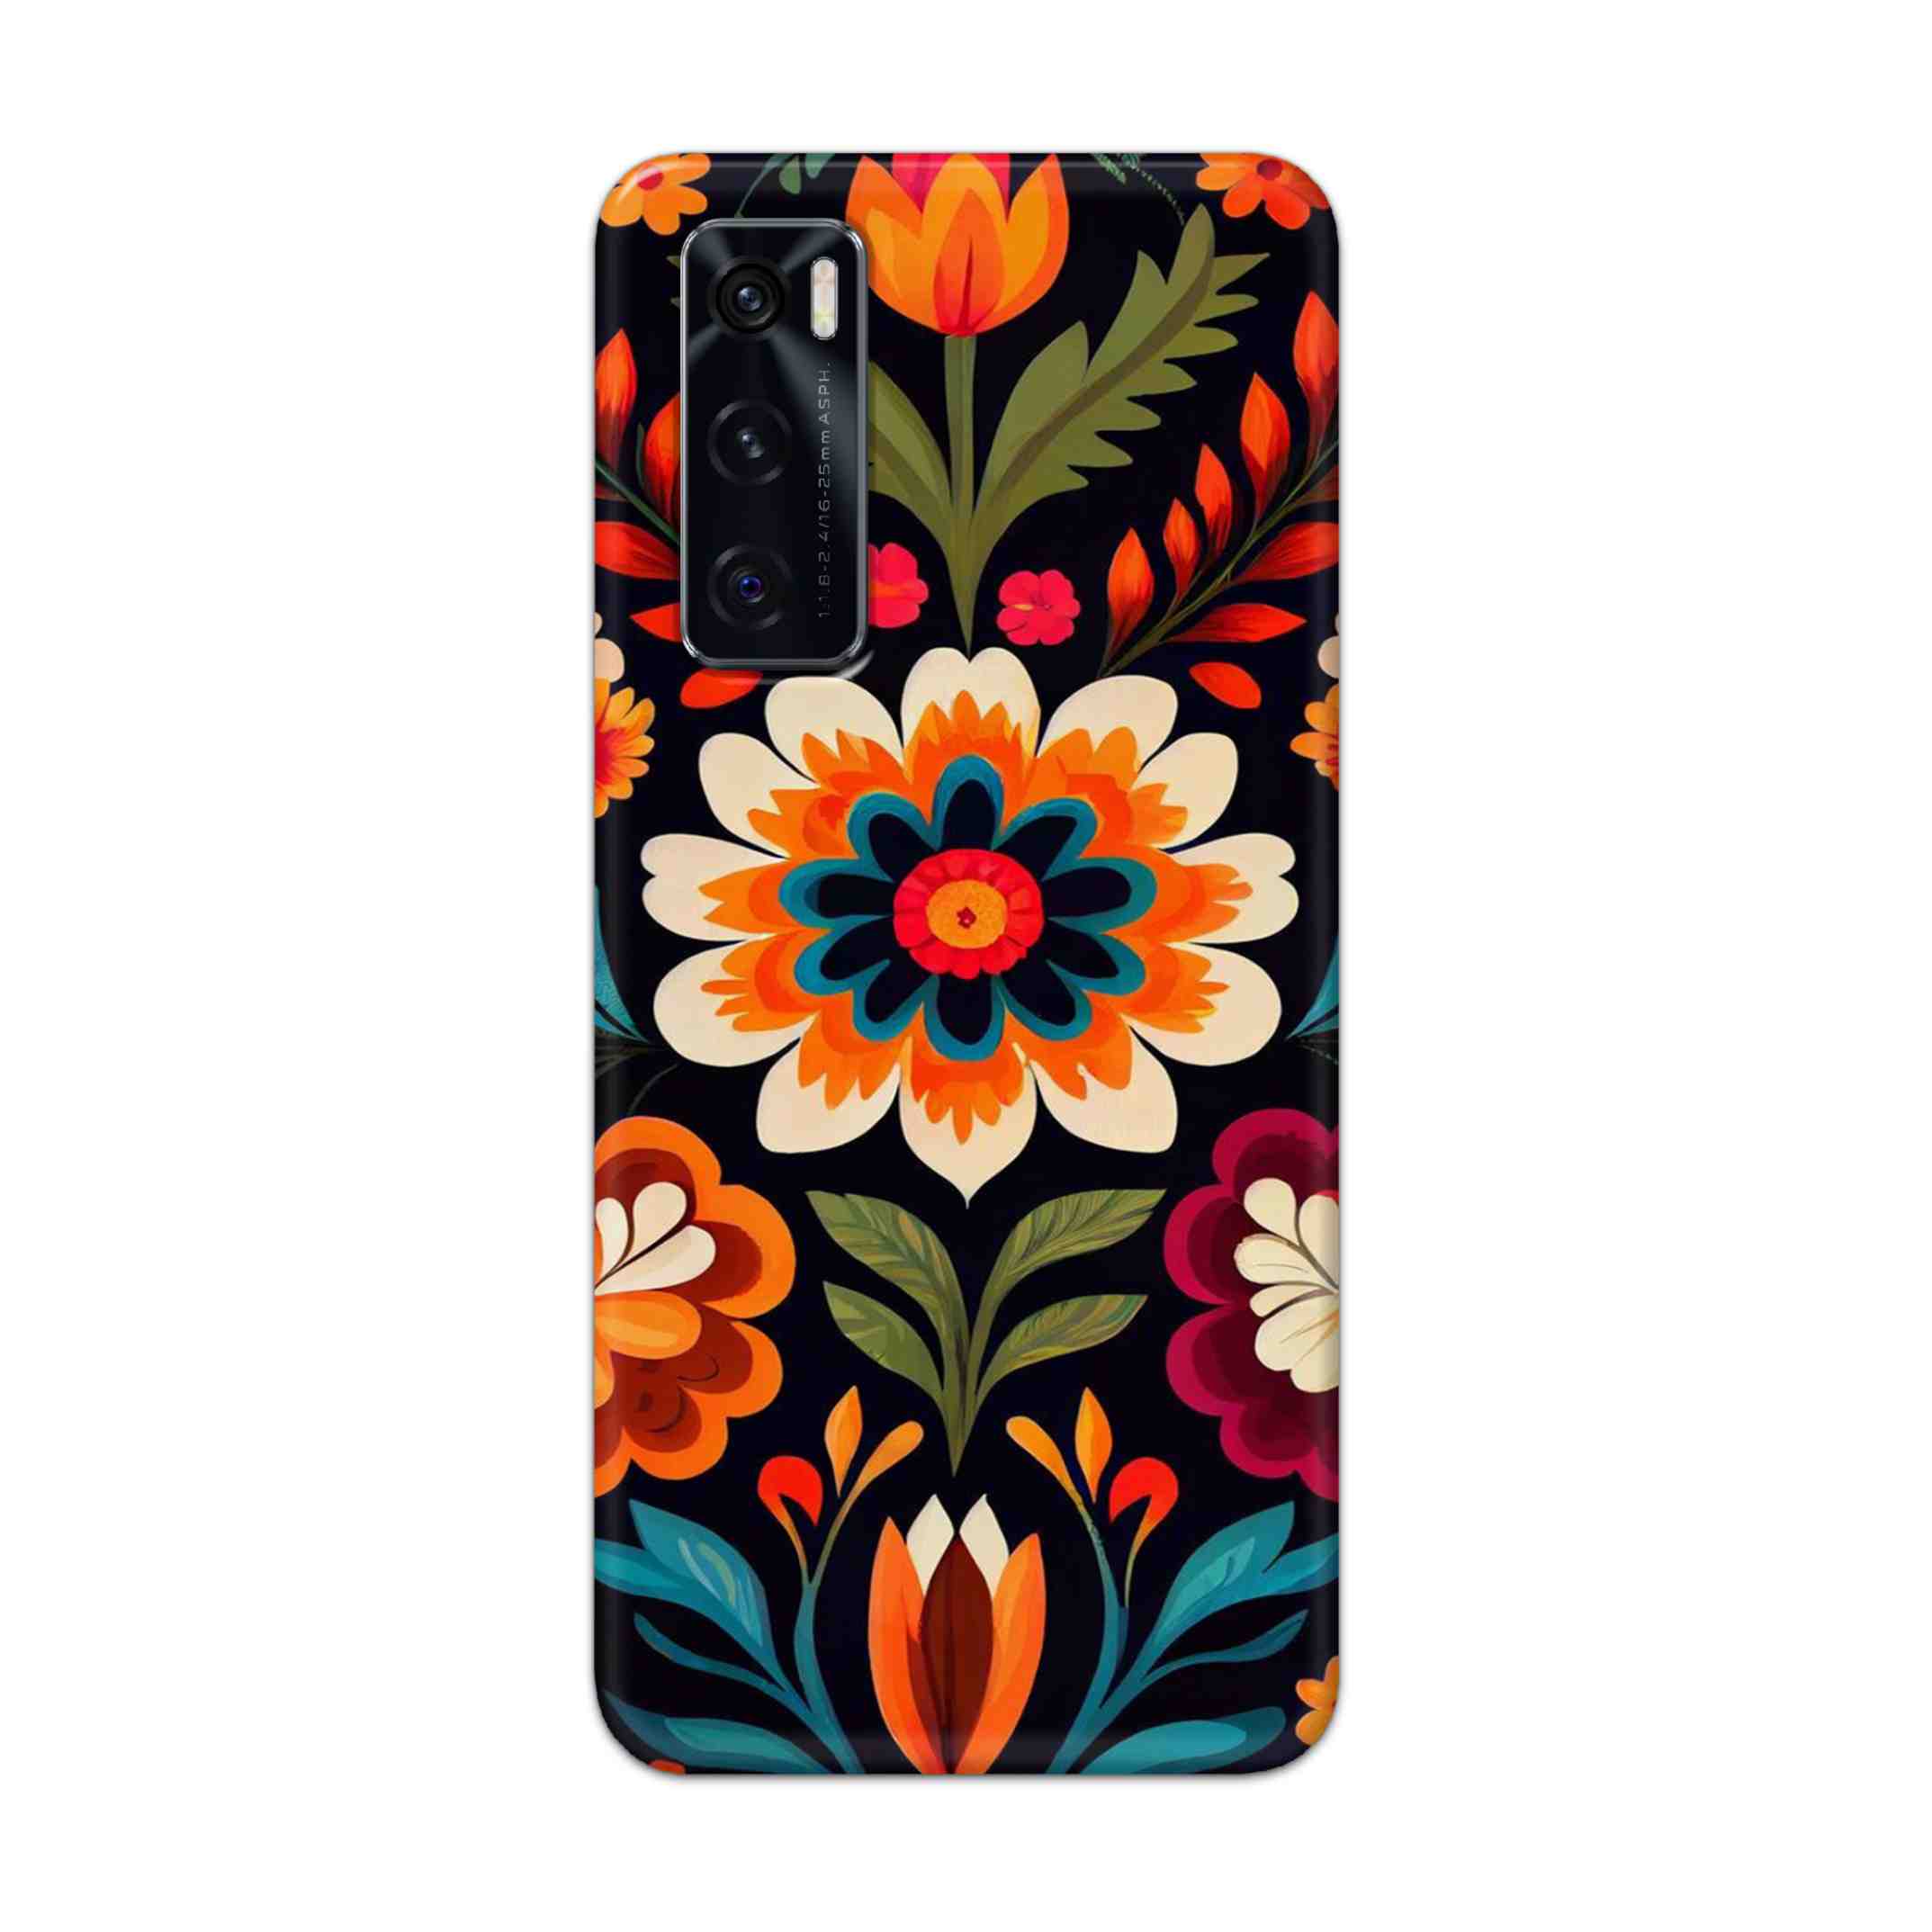 Buy Flower Hard Back Mobile Phone Case Cover For Vivo V20 SE Online